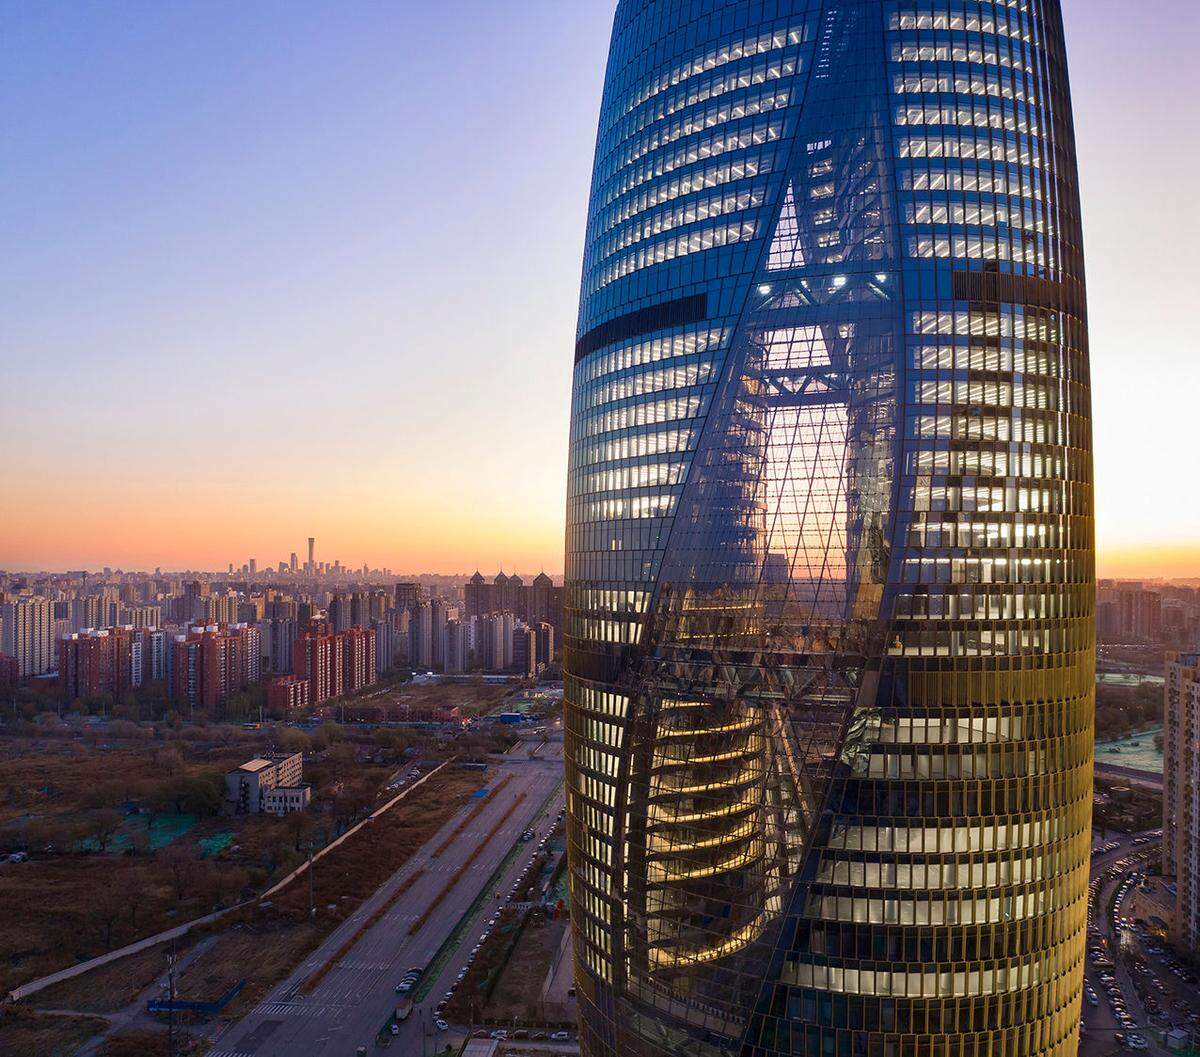 Ihr Name darf in keinem Architektur-Ranking fehlen: Jener der legendären, 2016 verstorbenen Star-Designerin Zaha Hadid. So reiht sich auch das von ihr entworfene Leeza Soho-Gebäude zu den fünf Finalisten. Der ikonische Turm befindet sich in Peking und zählt dort zu den zehn höchsten Gebäuden. Er umfasst 45 Stockwerke und bietet damit nicht nur ausreichend Bürofläche, sondern mit 194,15 Metern das höchste Atrium der Welt.